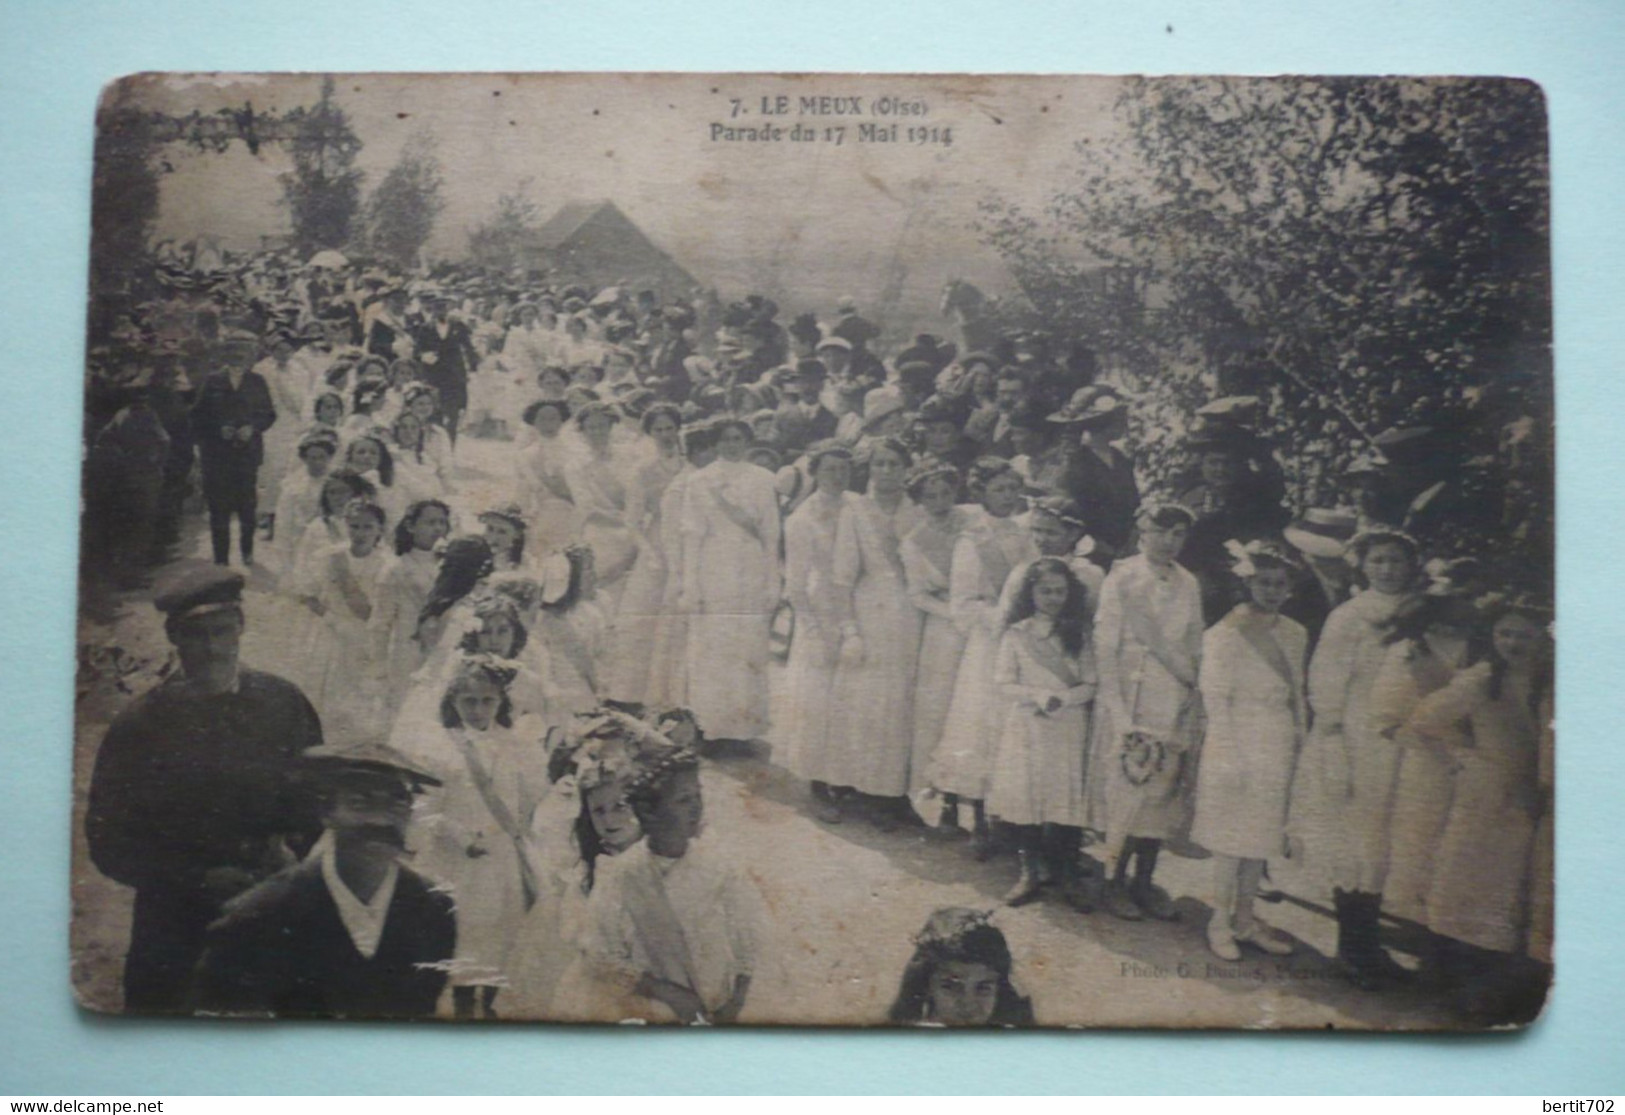 60 - LE MEUX - PARADE DU 17 MAI 1914 - Bouquet Provincial - Tir à L'arc  - Groupe De Jeunes Filles Tout De Blanc Vêtues - Boogschieten